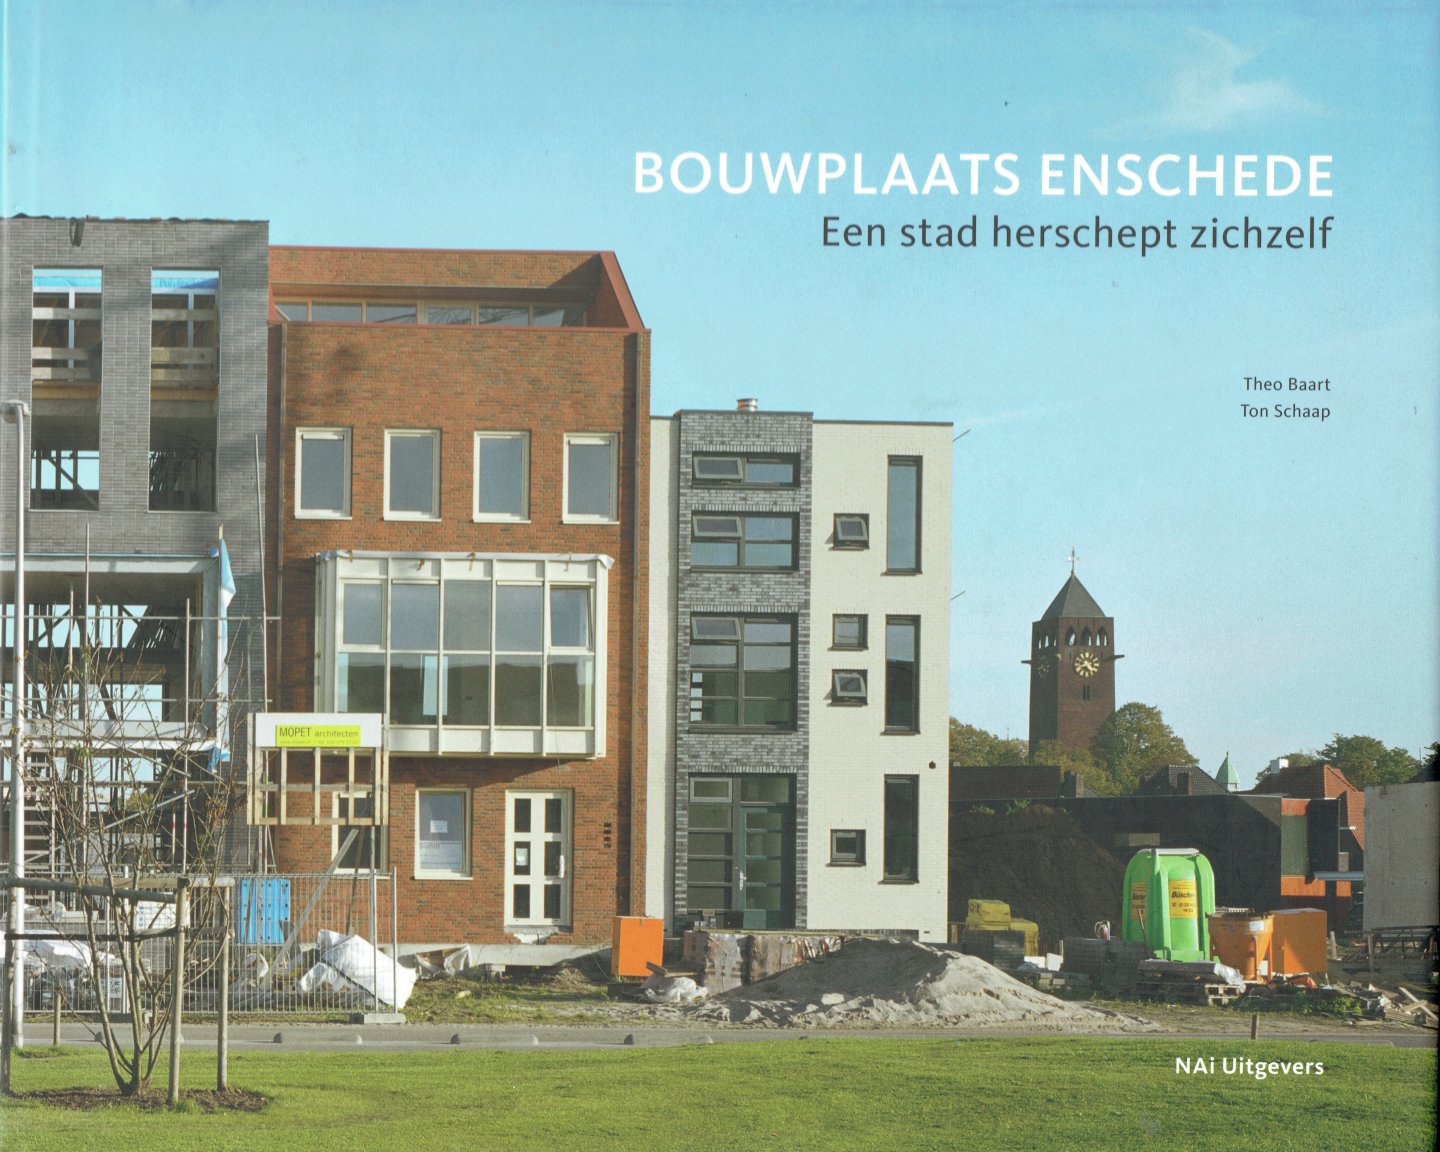 Schaap, Ton, stedebouwkundige, Theo Baart, fotografie - Bouwplaats Enschede / een stad herschept zichzelf